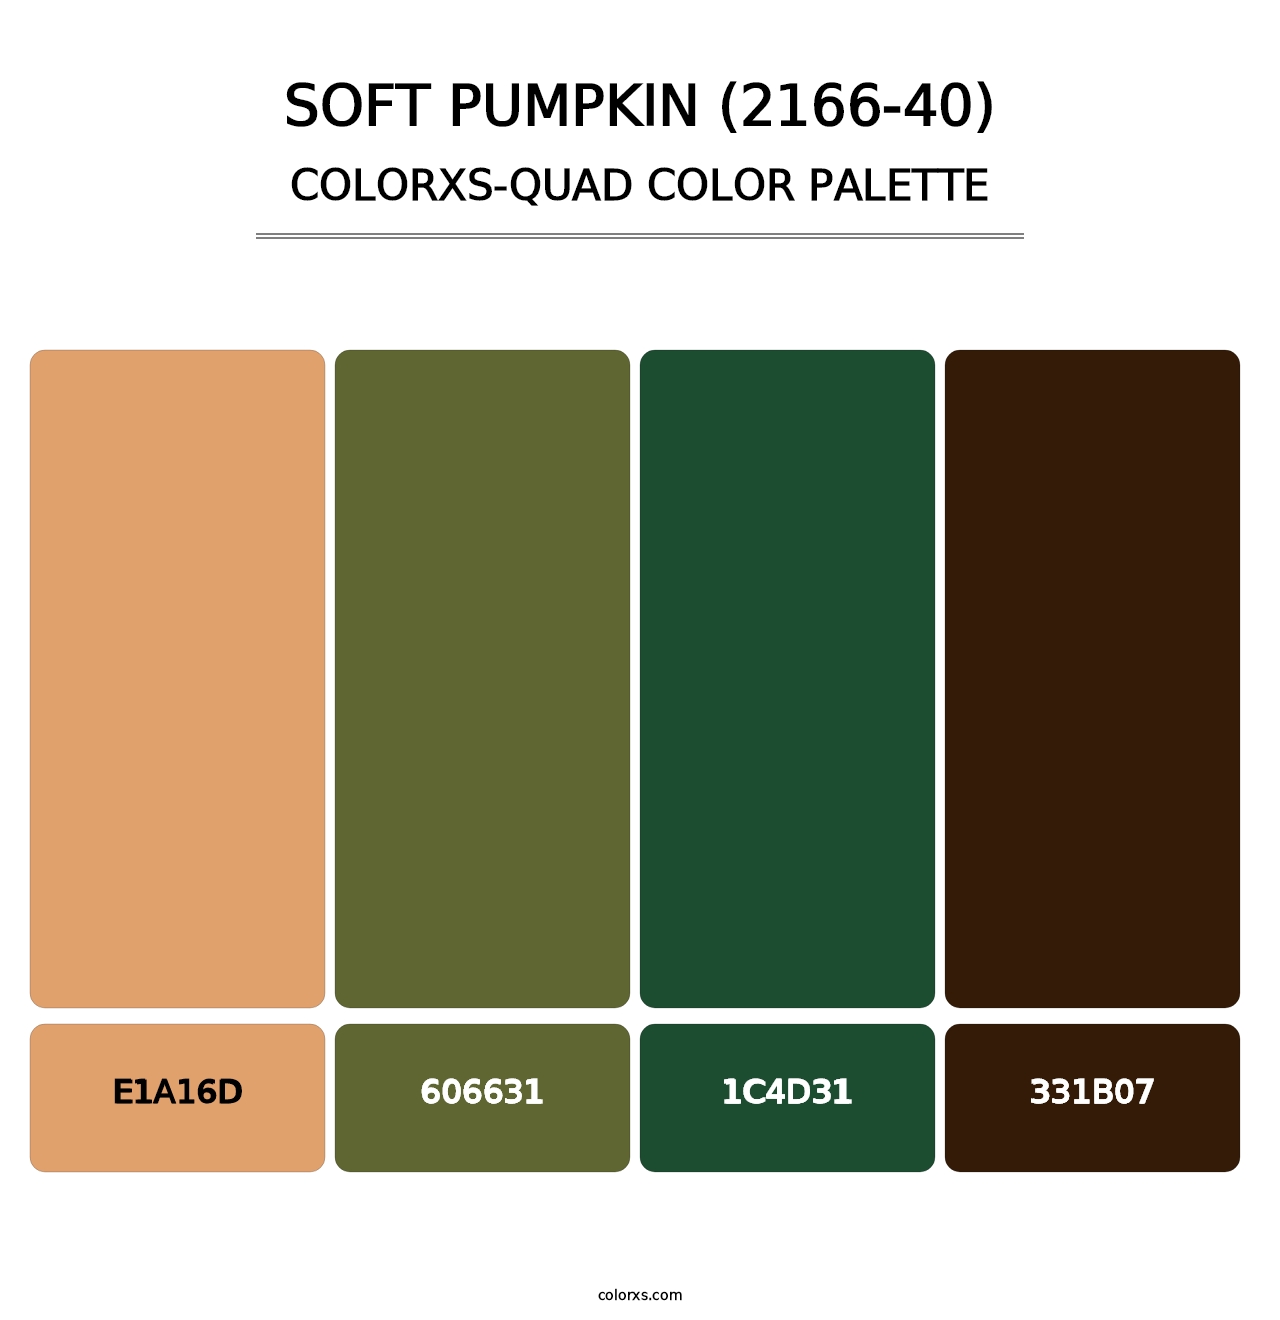 Soft Pumpkin (2166-40) - Colorxs Quad Palette